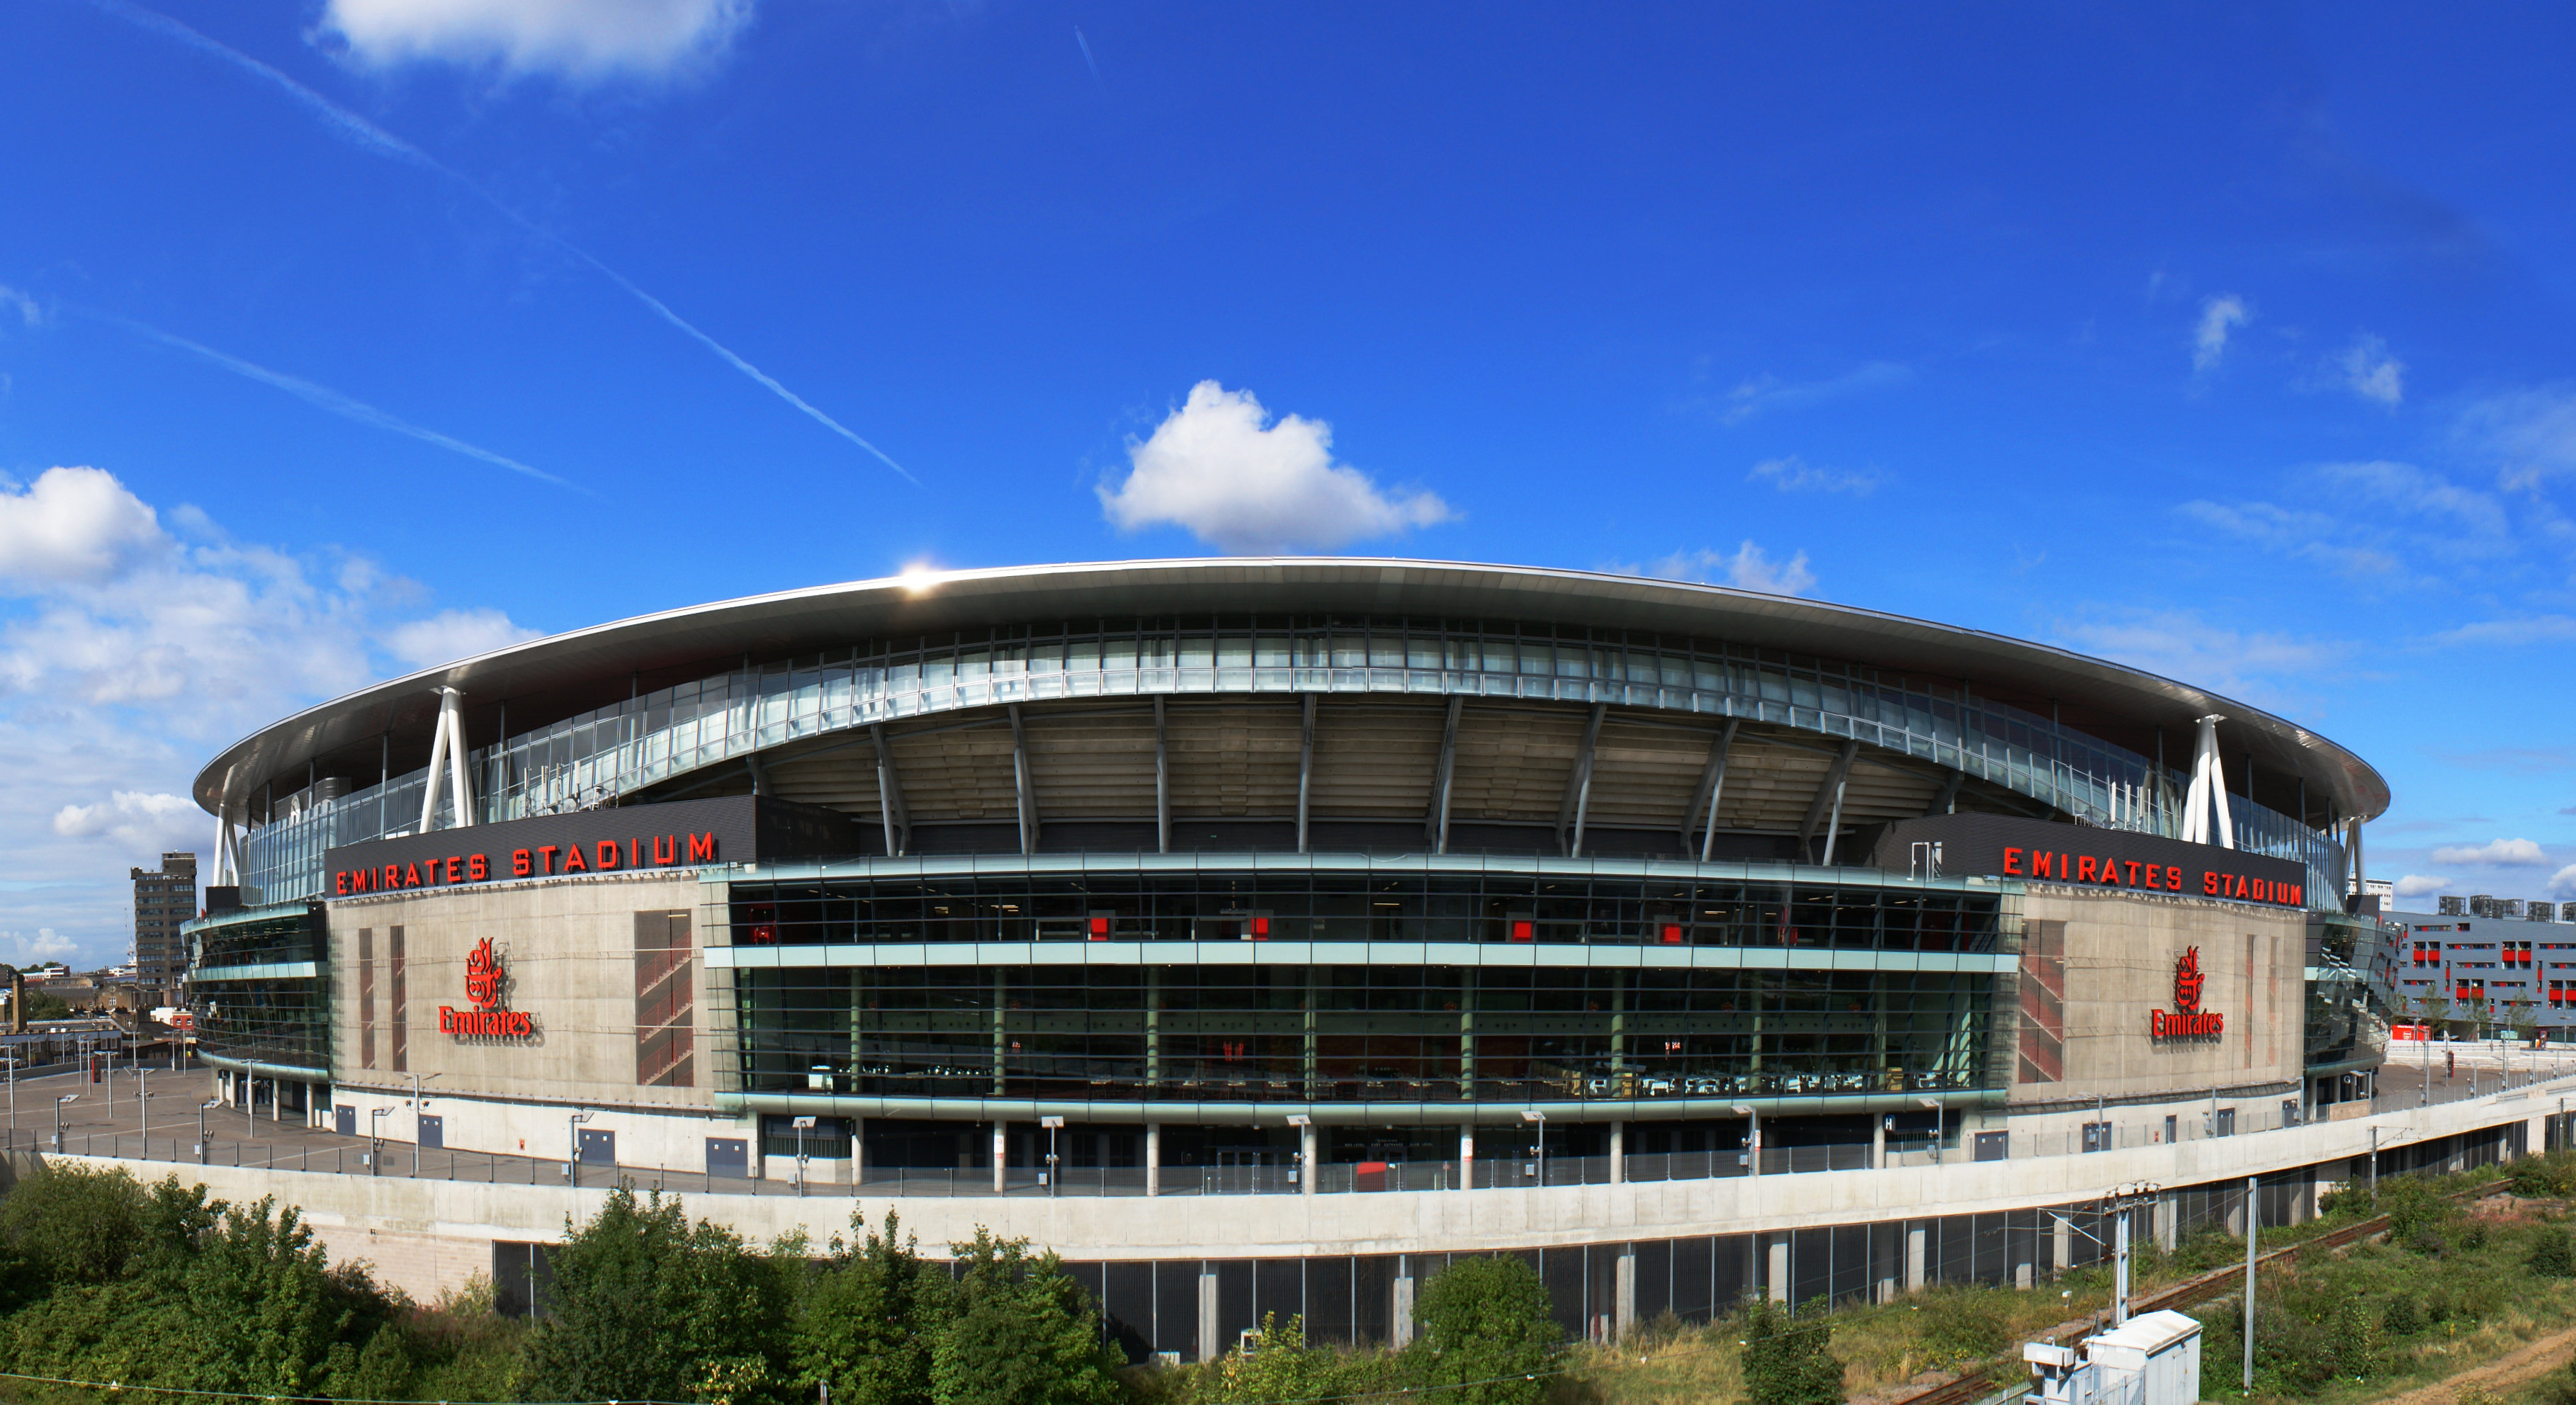 Visit The Emirates Stadium, The Headquarters of Arsenal FC ...